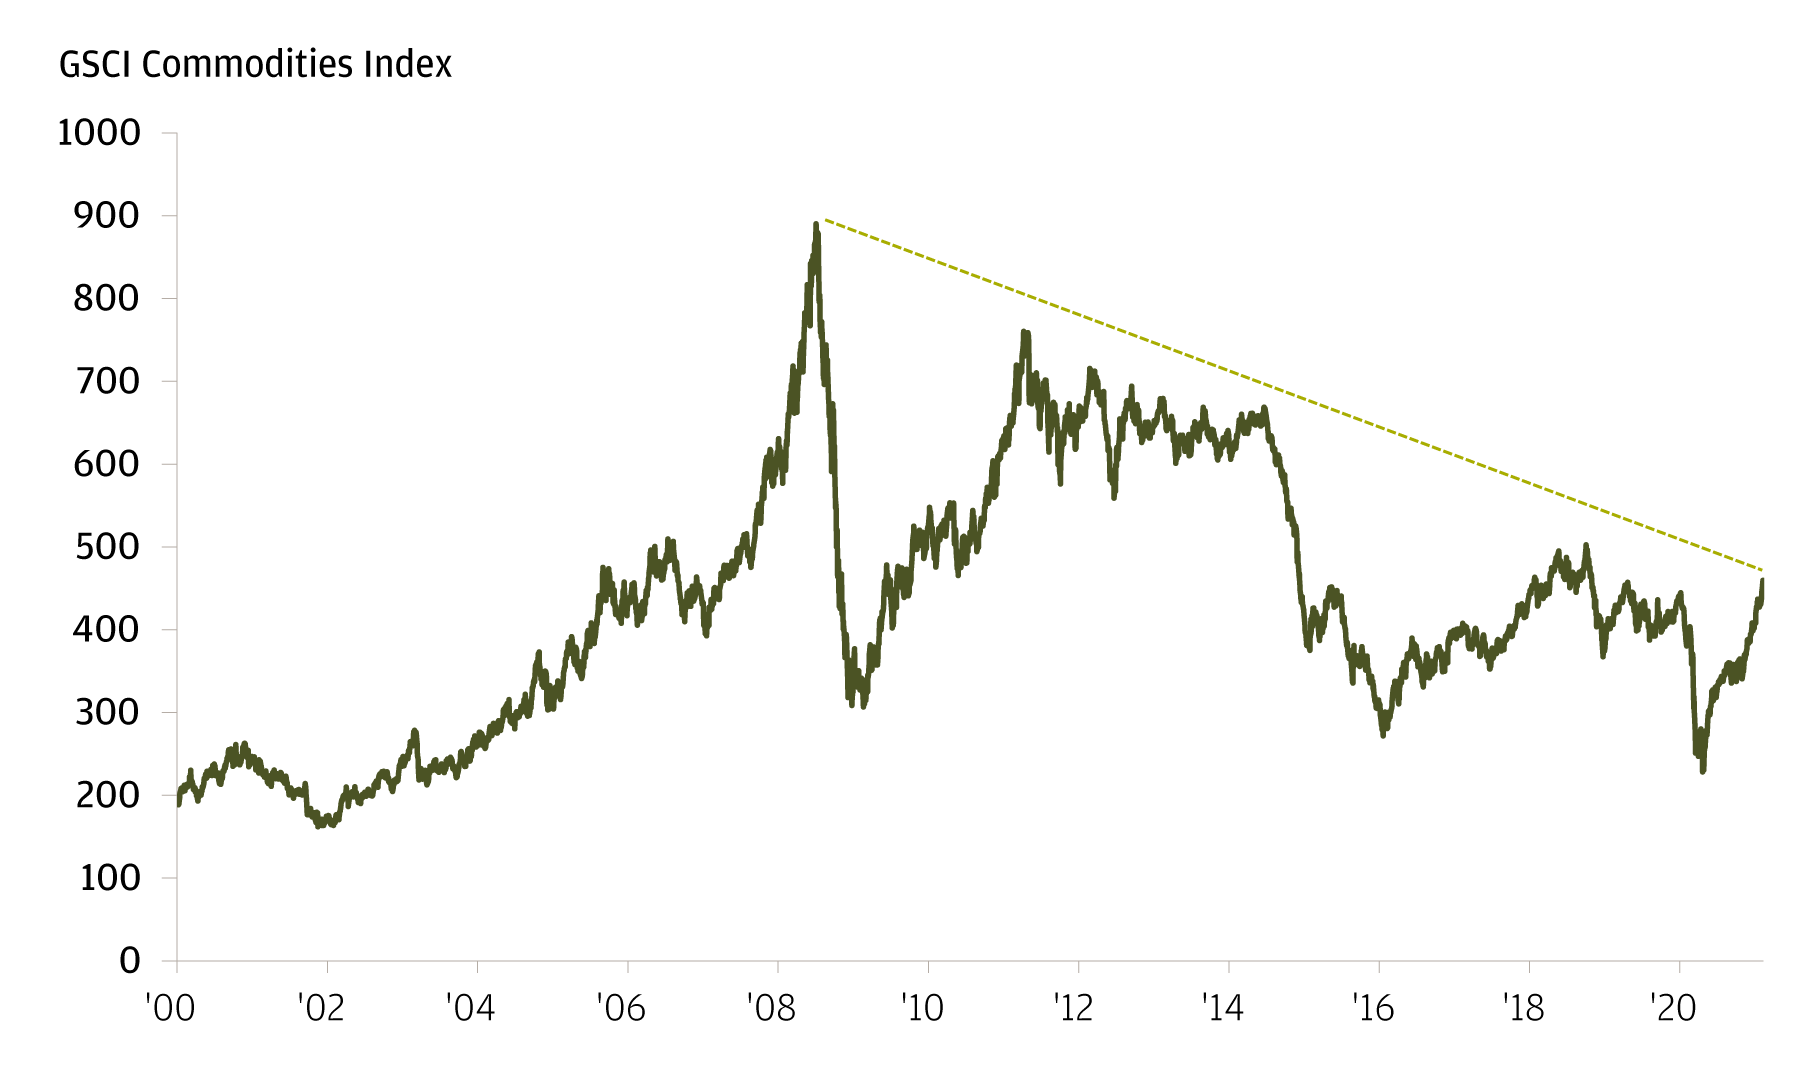 Il grafico mostra l'andamento del GSCI Commodities Index dal 31 dicembre 1999 al 10 febbraio 2021. L'indice si attesta attualmente (al 10 febbraio 2021) a 459,49 punti, ben al di sotto del picco del 3 luglio 2008 di 890,29 punti.